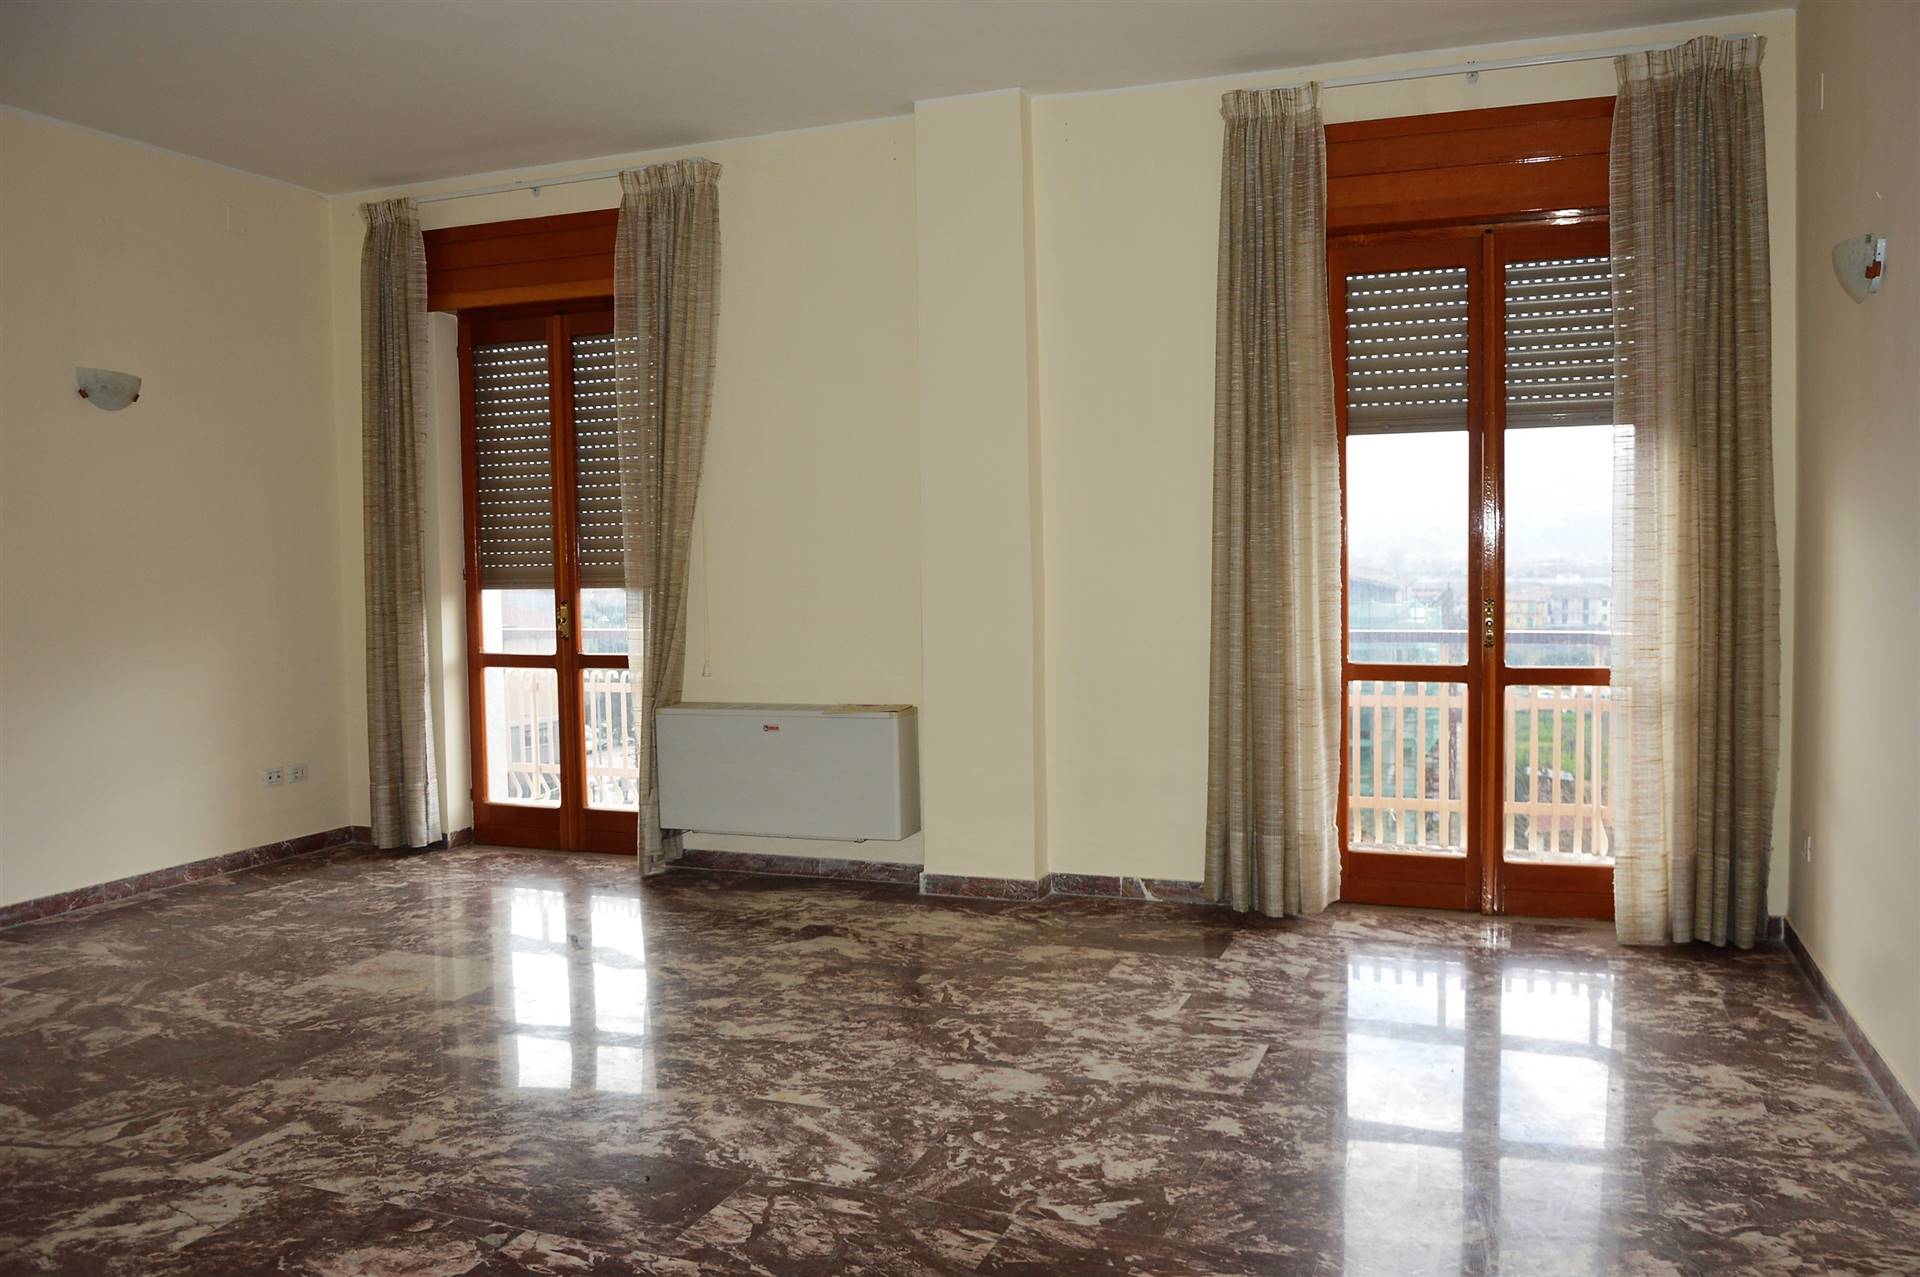 Appartamento in vendita a Sala Consilina, 5 locali, zona Località: TRINITA, prezzo € 65.000 | CambioCasa.it